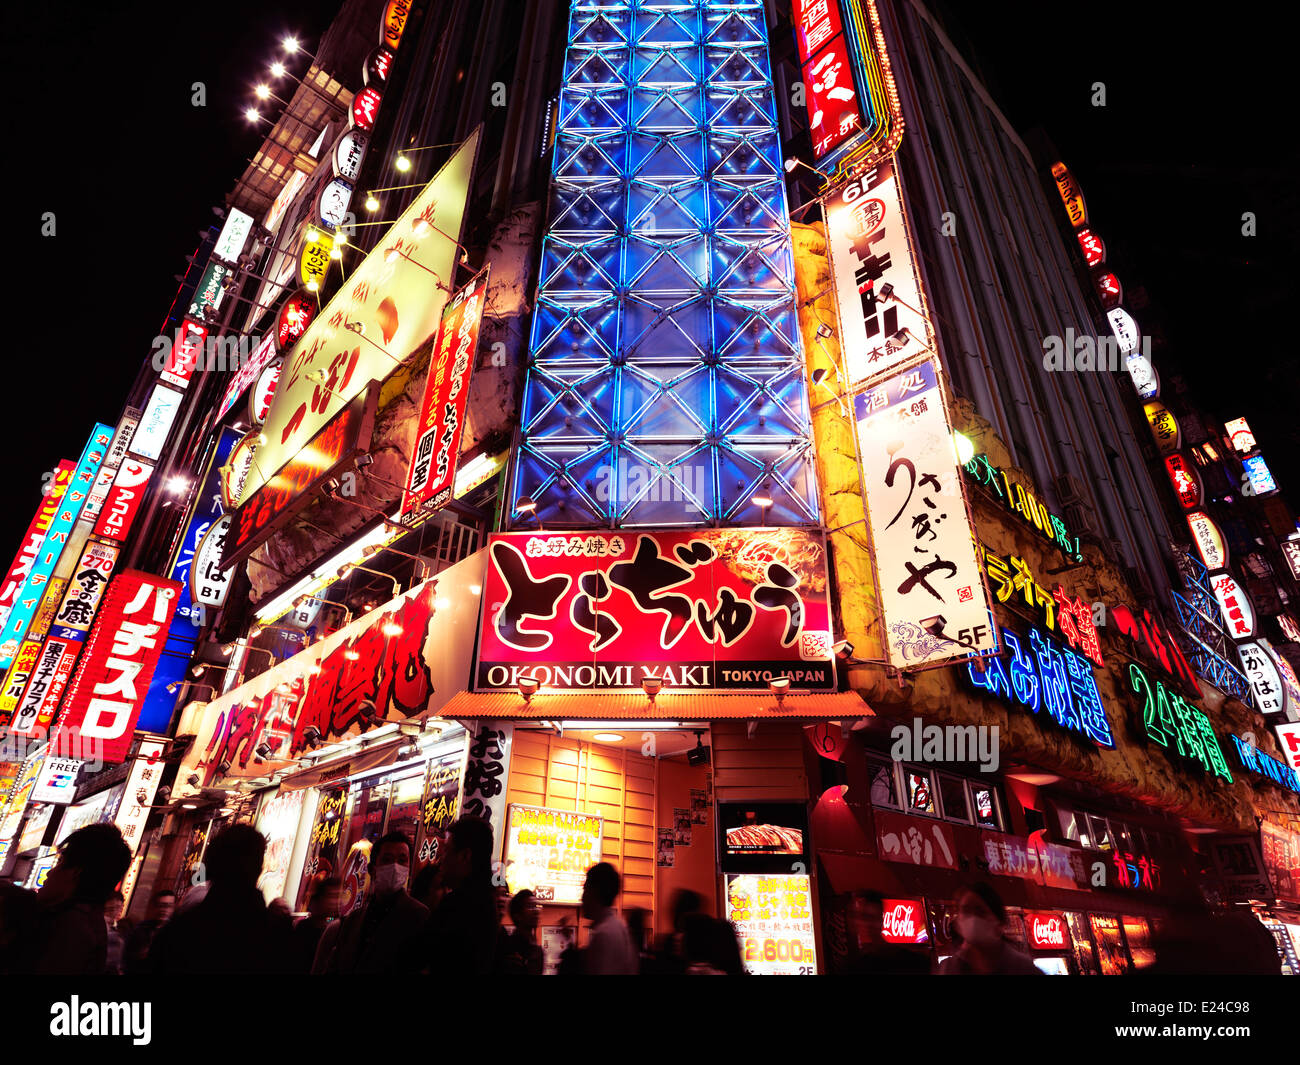 Colorful signs on streets at night in Shinjuku, Tokyo, Japan. Stock Photo